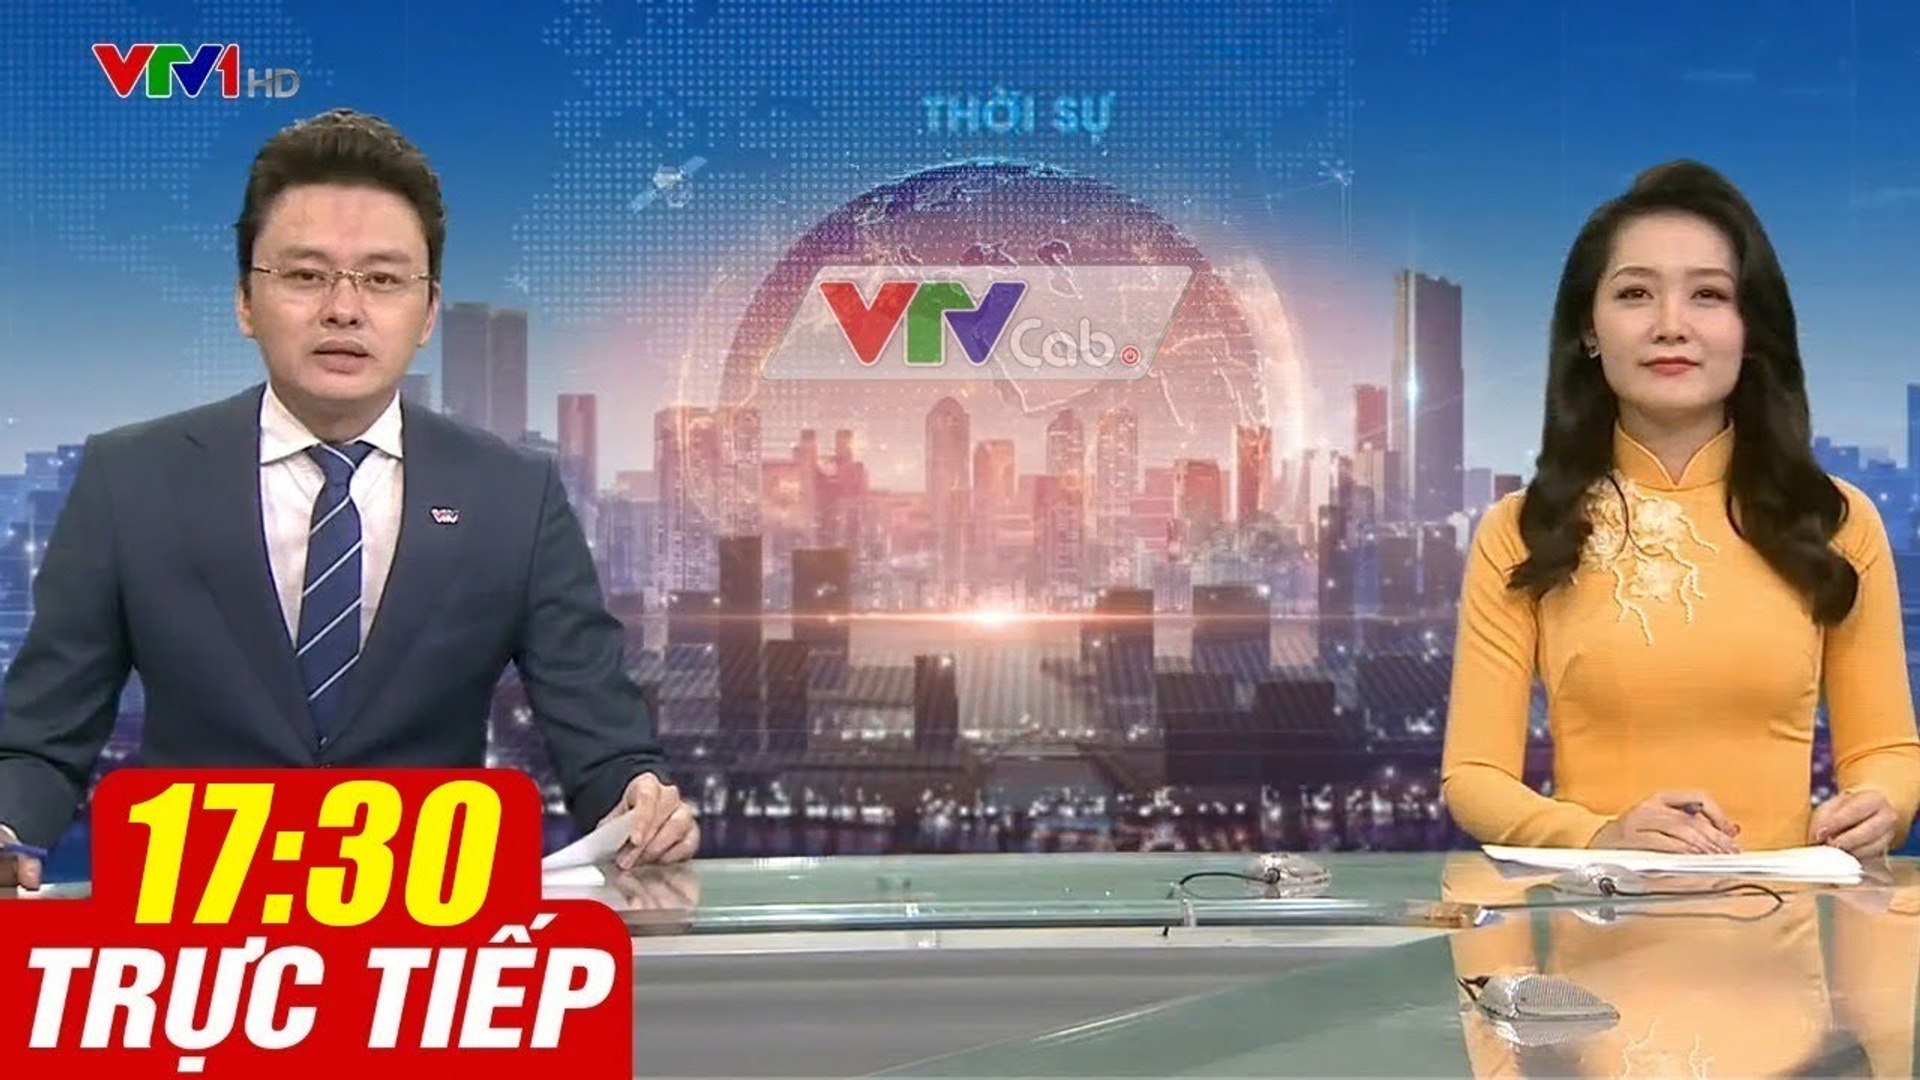 Trực Tiếp VIỆT NAM HÔM NAY 17h30 ngày 24.09.2020  Tin tức thời sự VTV1 mới nhất hôm nay